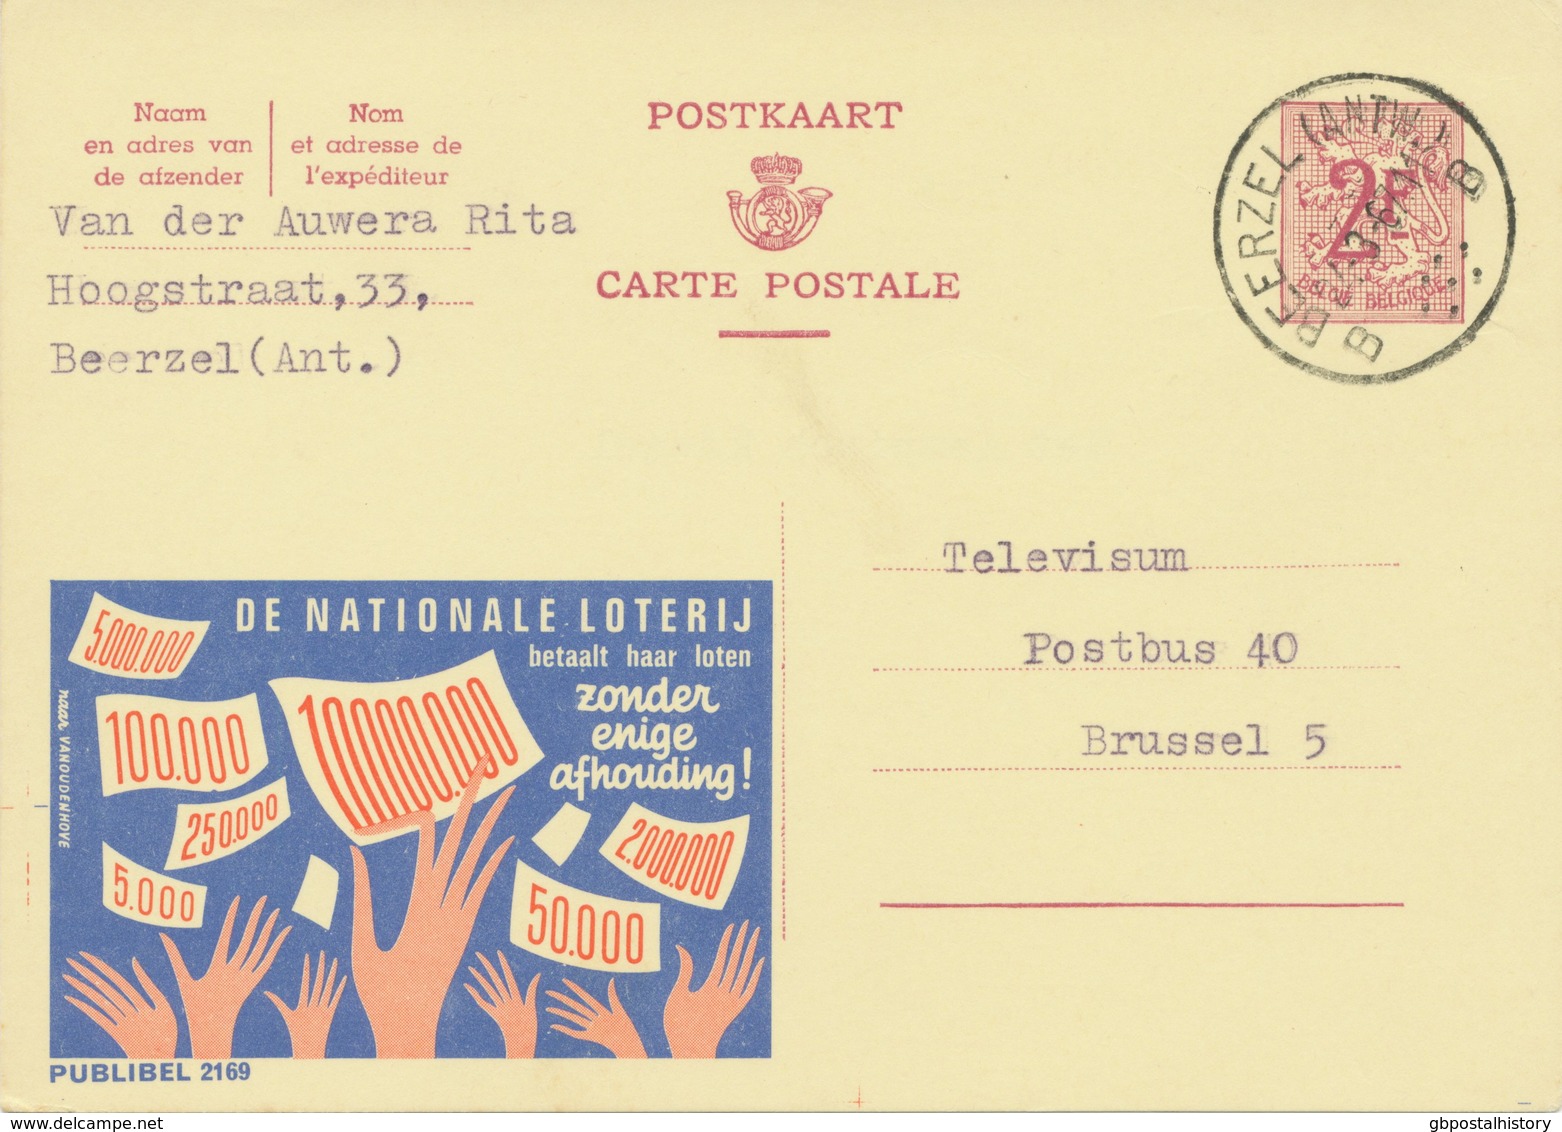 BELGIUM BEERZEL (ANTW.) B (Putte) 1967 Postal Stationery 2 F, PUBLIBEL 2169 Variety At Left Of The Design: Printer Marks - Variétés/Curios.